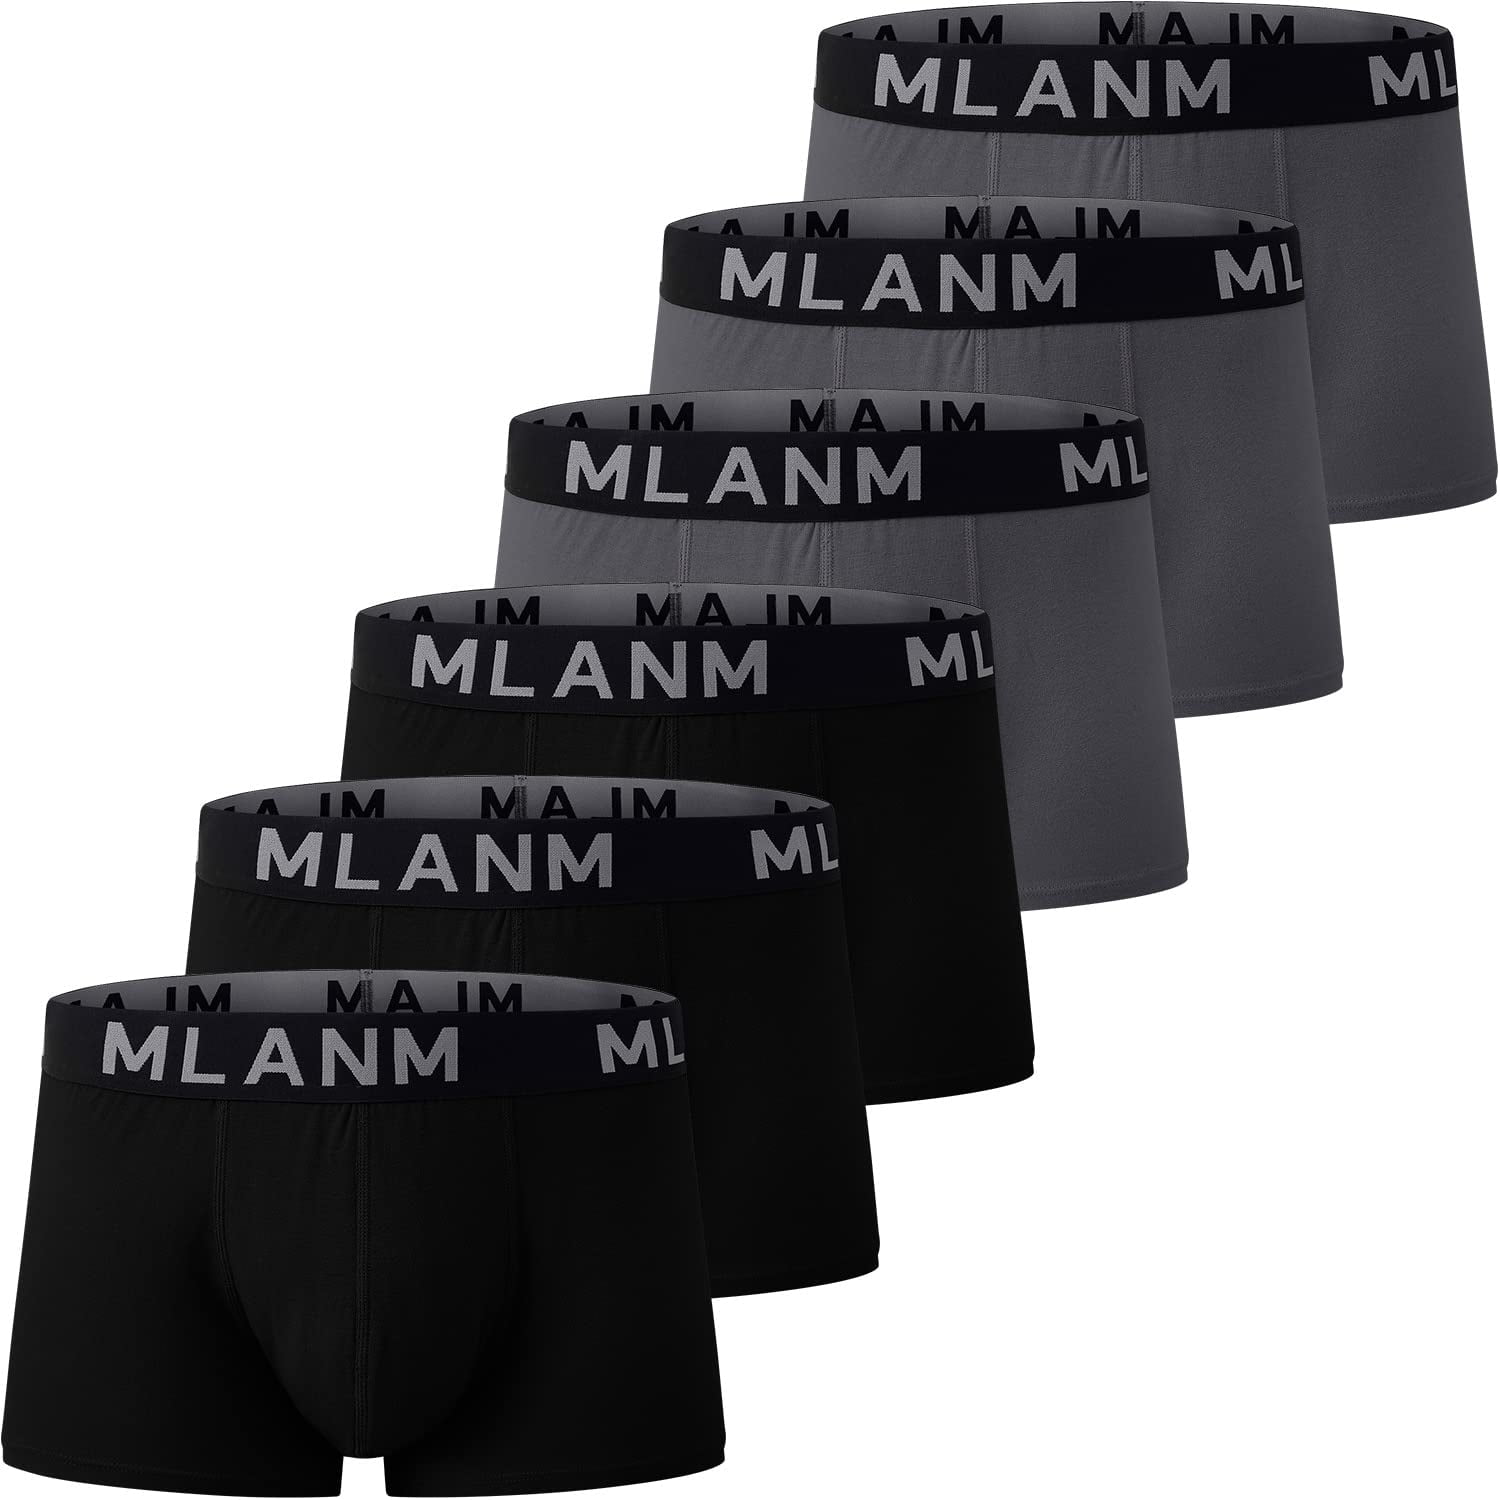 MLANM Men's Moisture-Wicking Underwear Cotton Fitted 6-Pack Boxer Brief ...